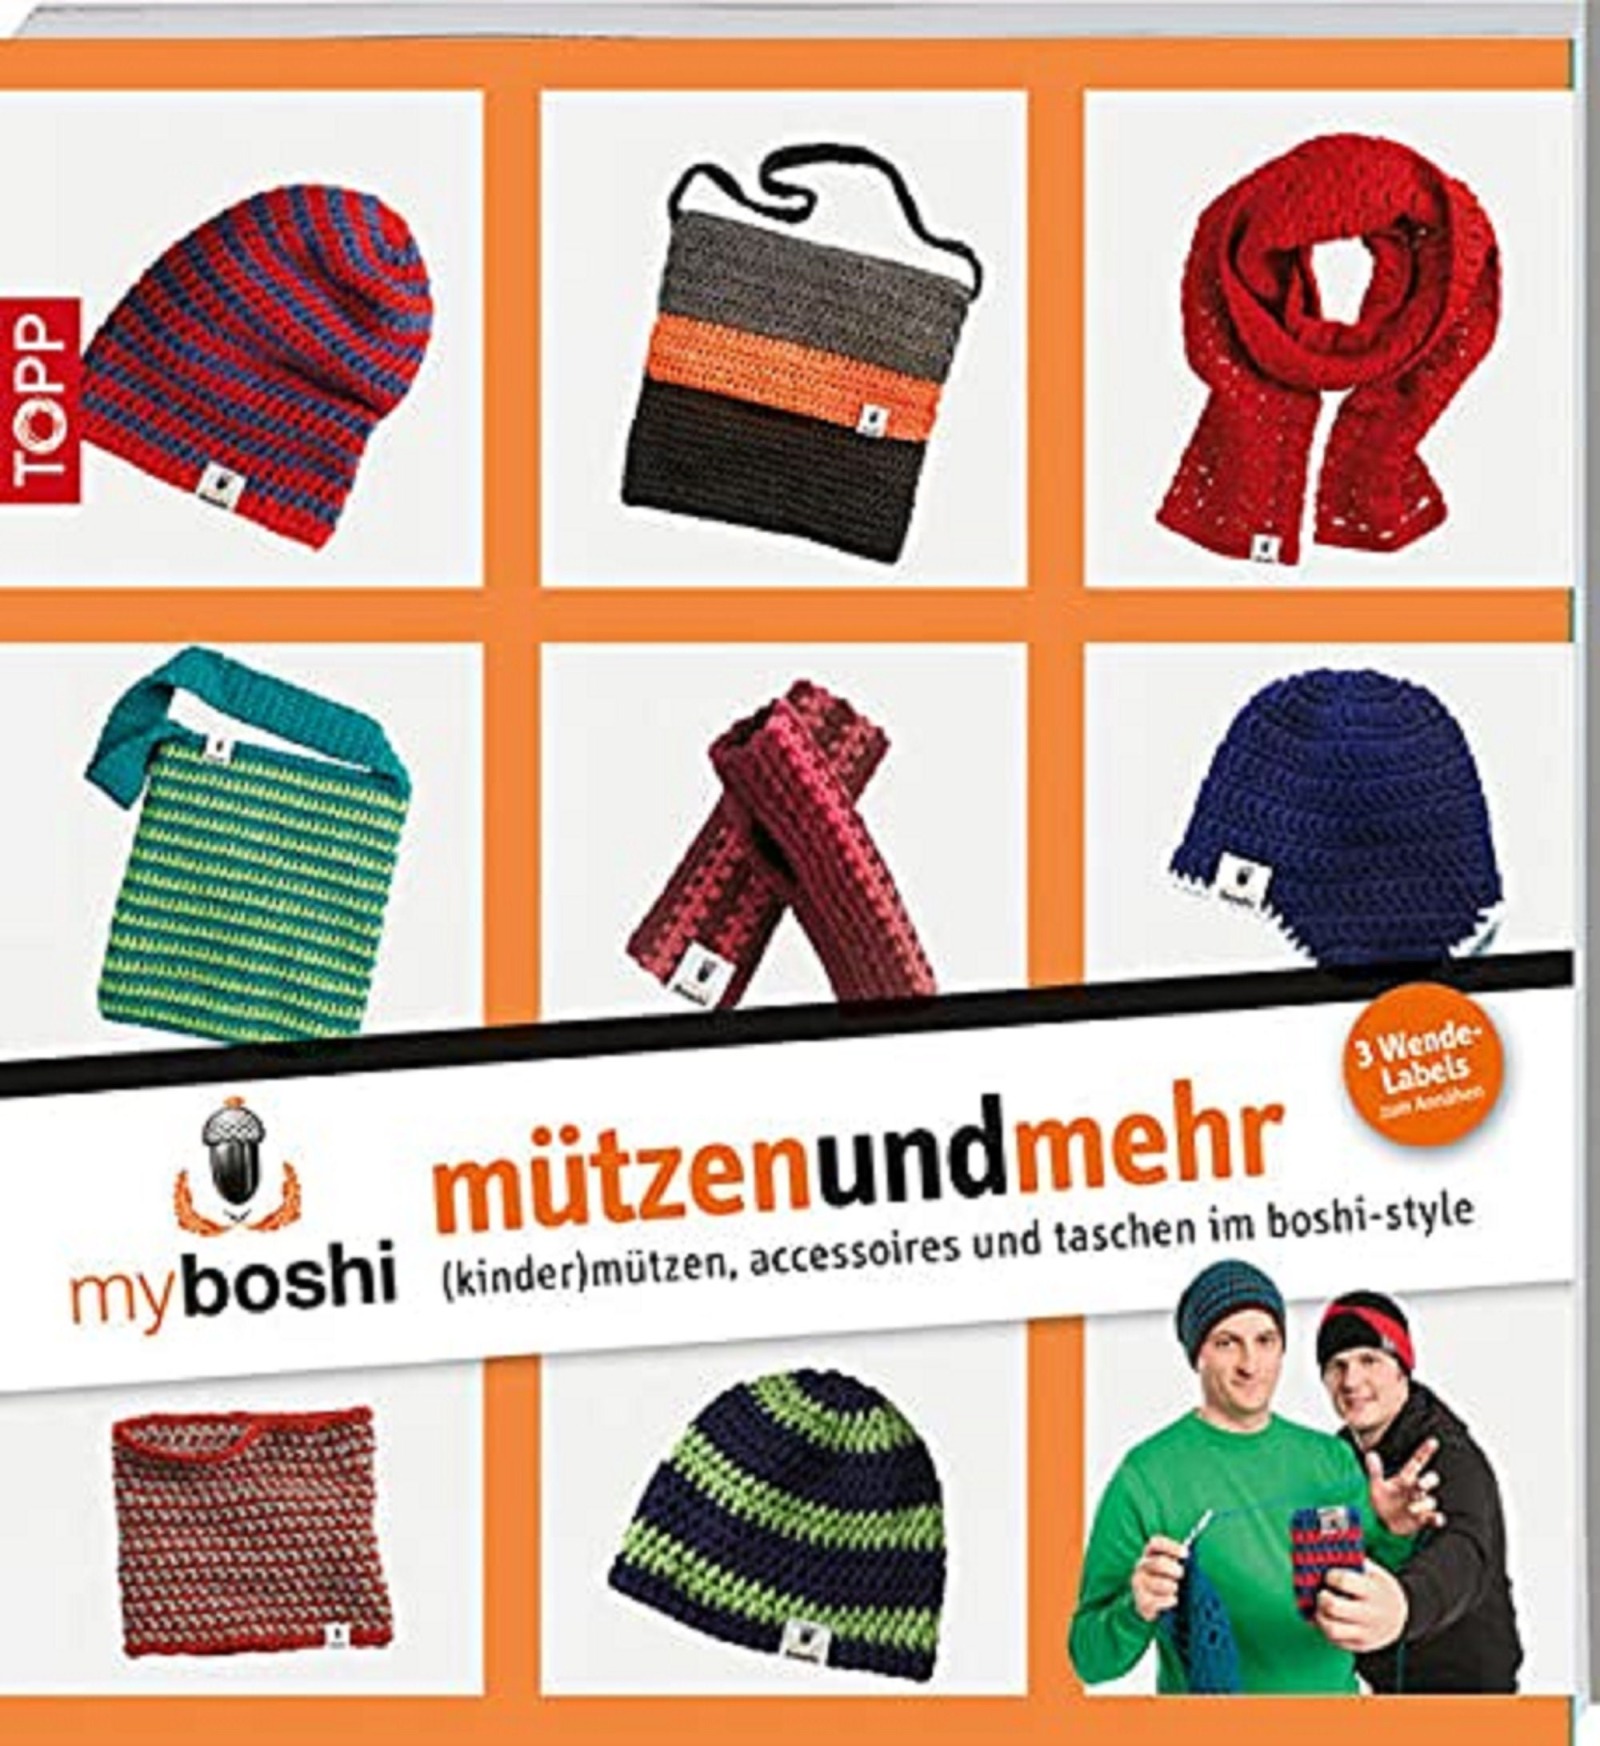 myboshi - mützenundmehr: kinder mützen, accessoires und taschen im boshi-style | Taschenbuch | TO